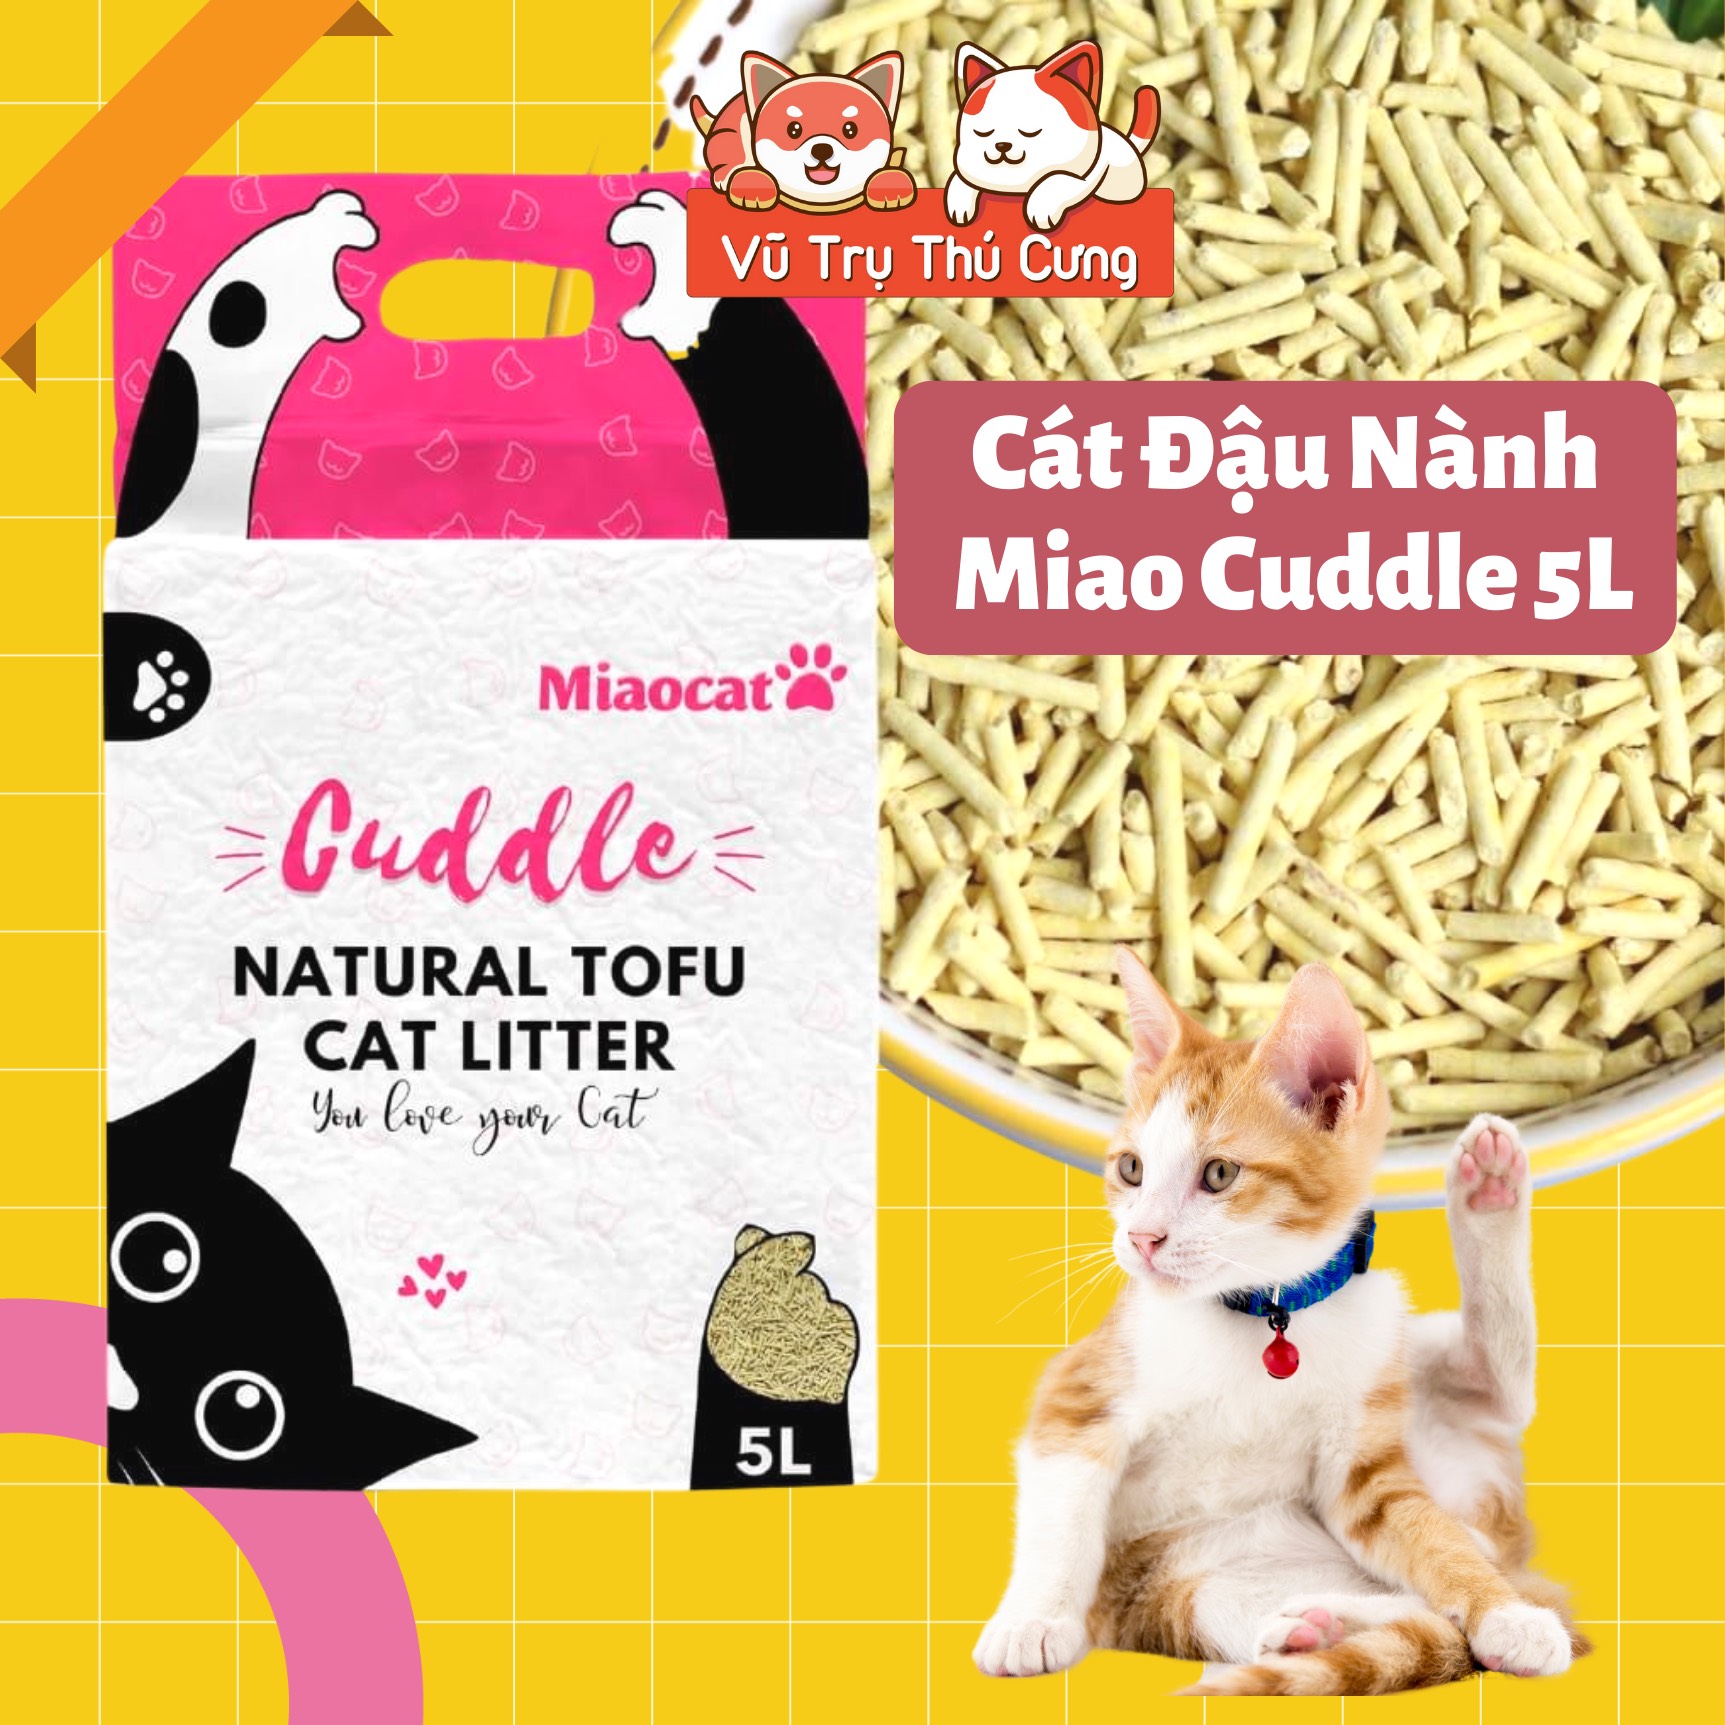 Cát đậu nành Tofu Miao Cuddle 5L cho mèo đi vệ sinh, không bụi, khử mùi tốt